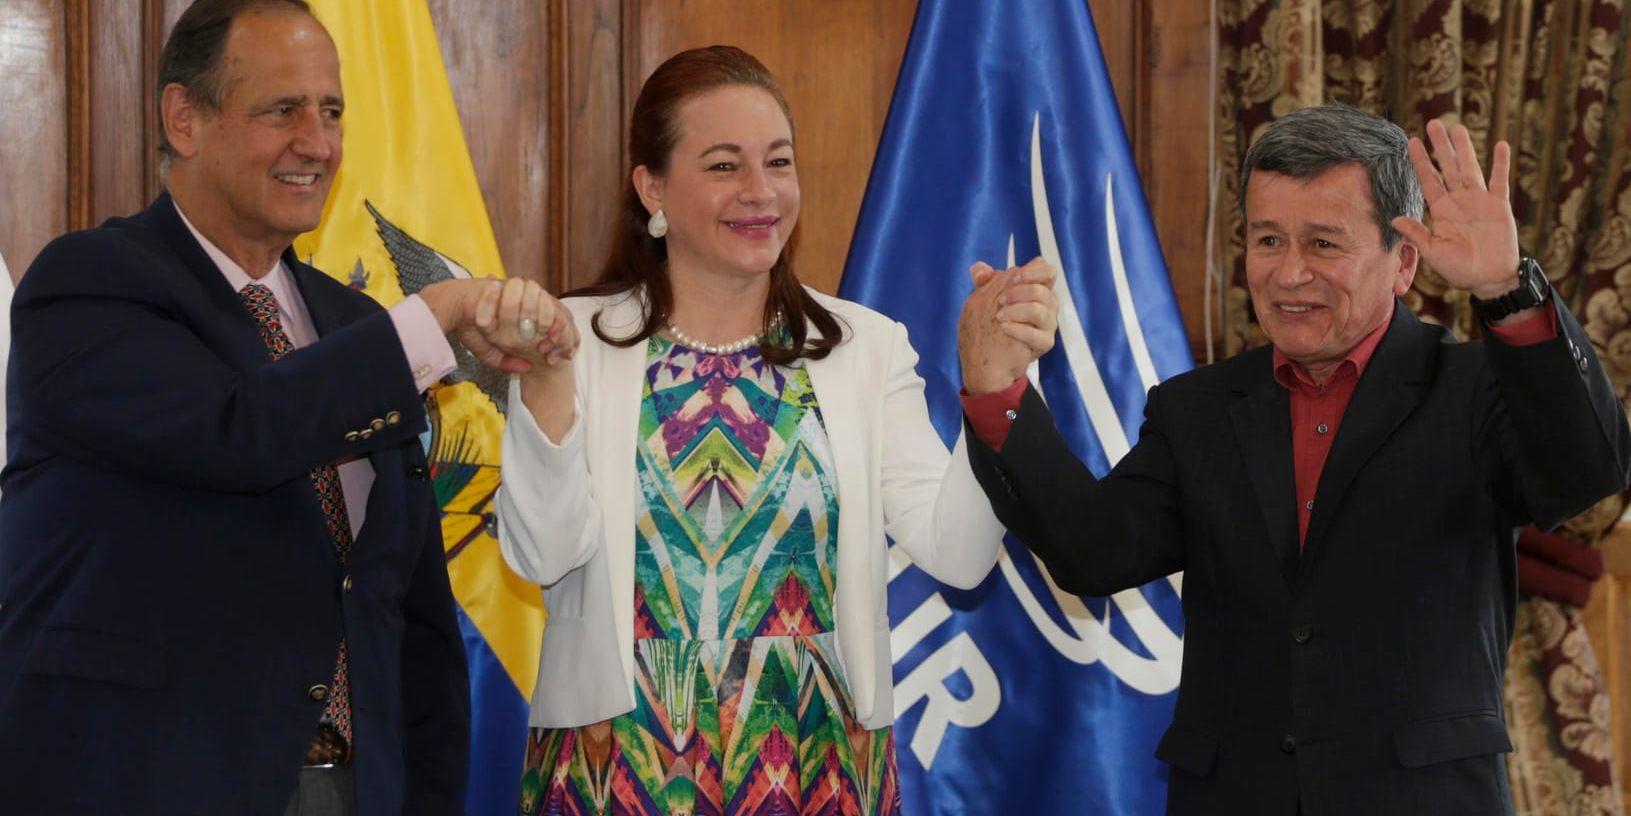 Ecuadors utrikesminister Fernanda Espinosa tillsammans med ELN-ledaren Pablo Beltrán och den colombianska regeringens representant Juan Camilo Restrepo, när de skrev under vapenvilan i september.